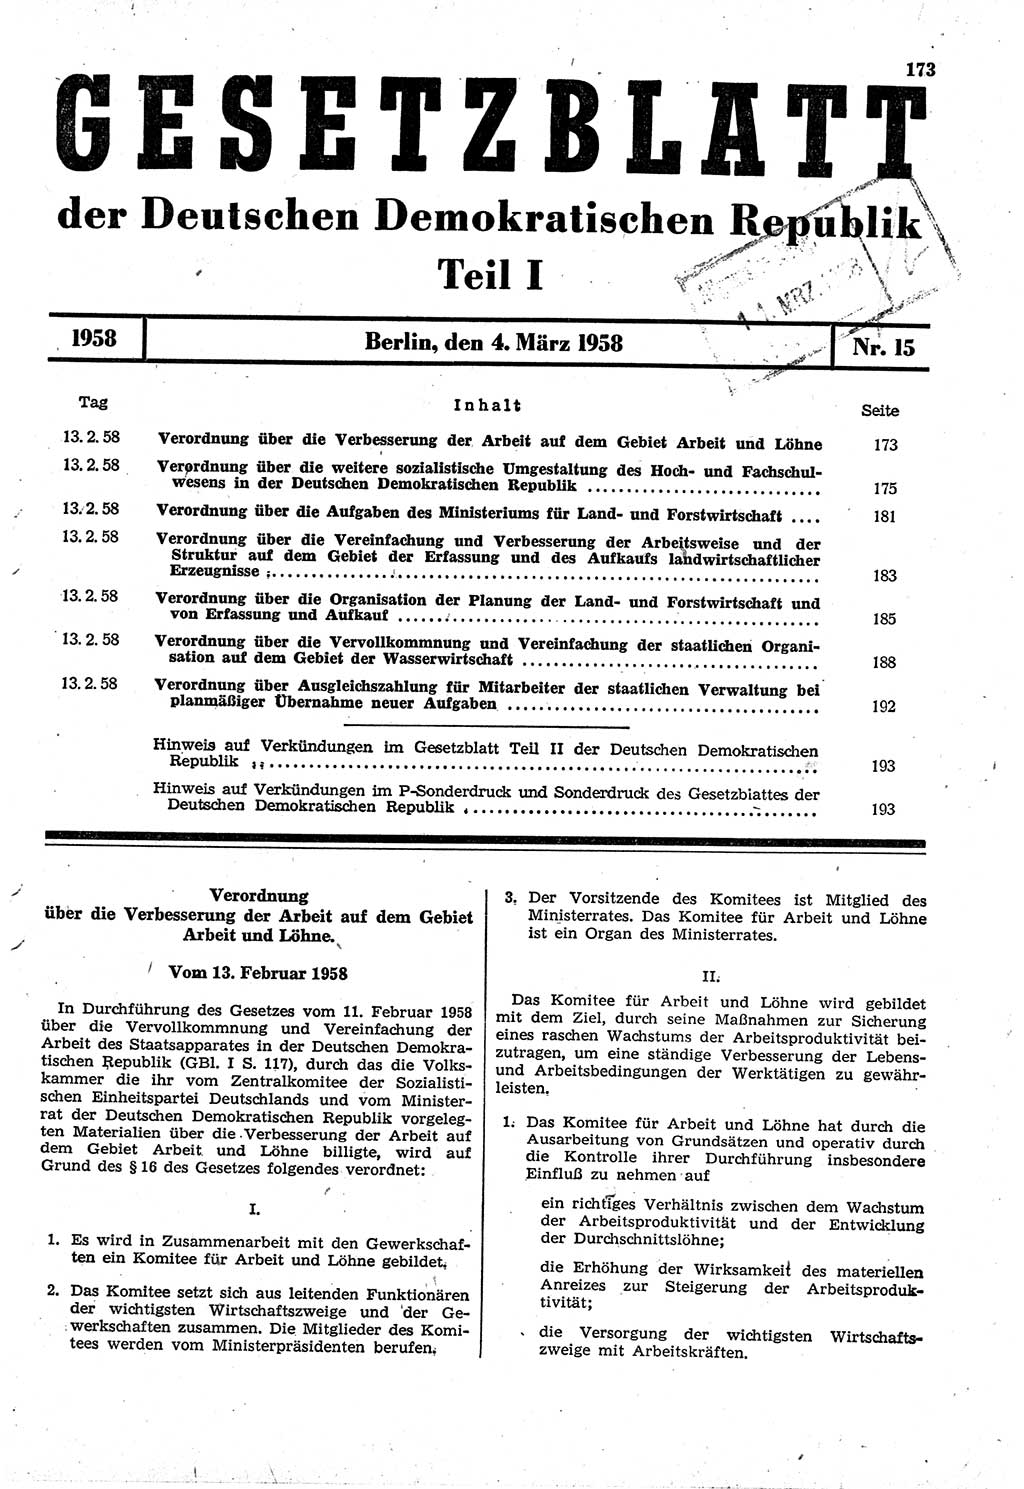 Gesetzblatt (GBl.) der Deutschen Demokratischen Republik (DDR) Teil Ⅰ 1958, Seite 173 (GBl. DDR Ⅰ 1958, S. 173)